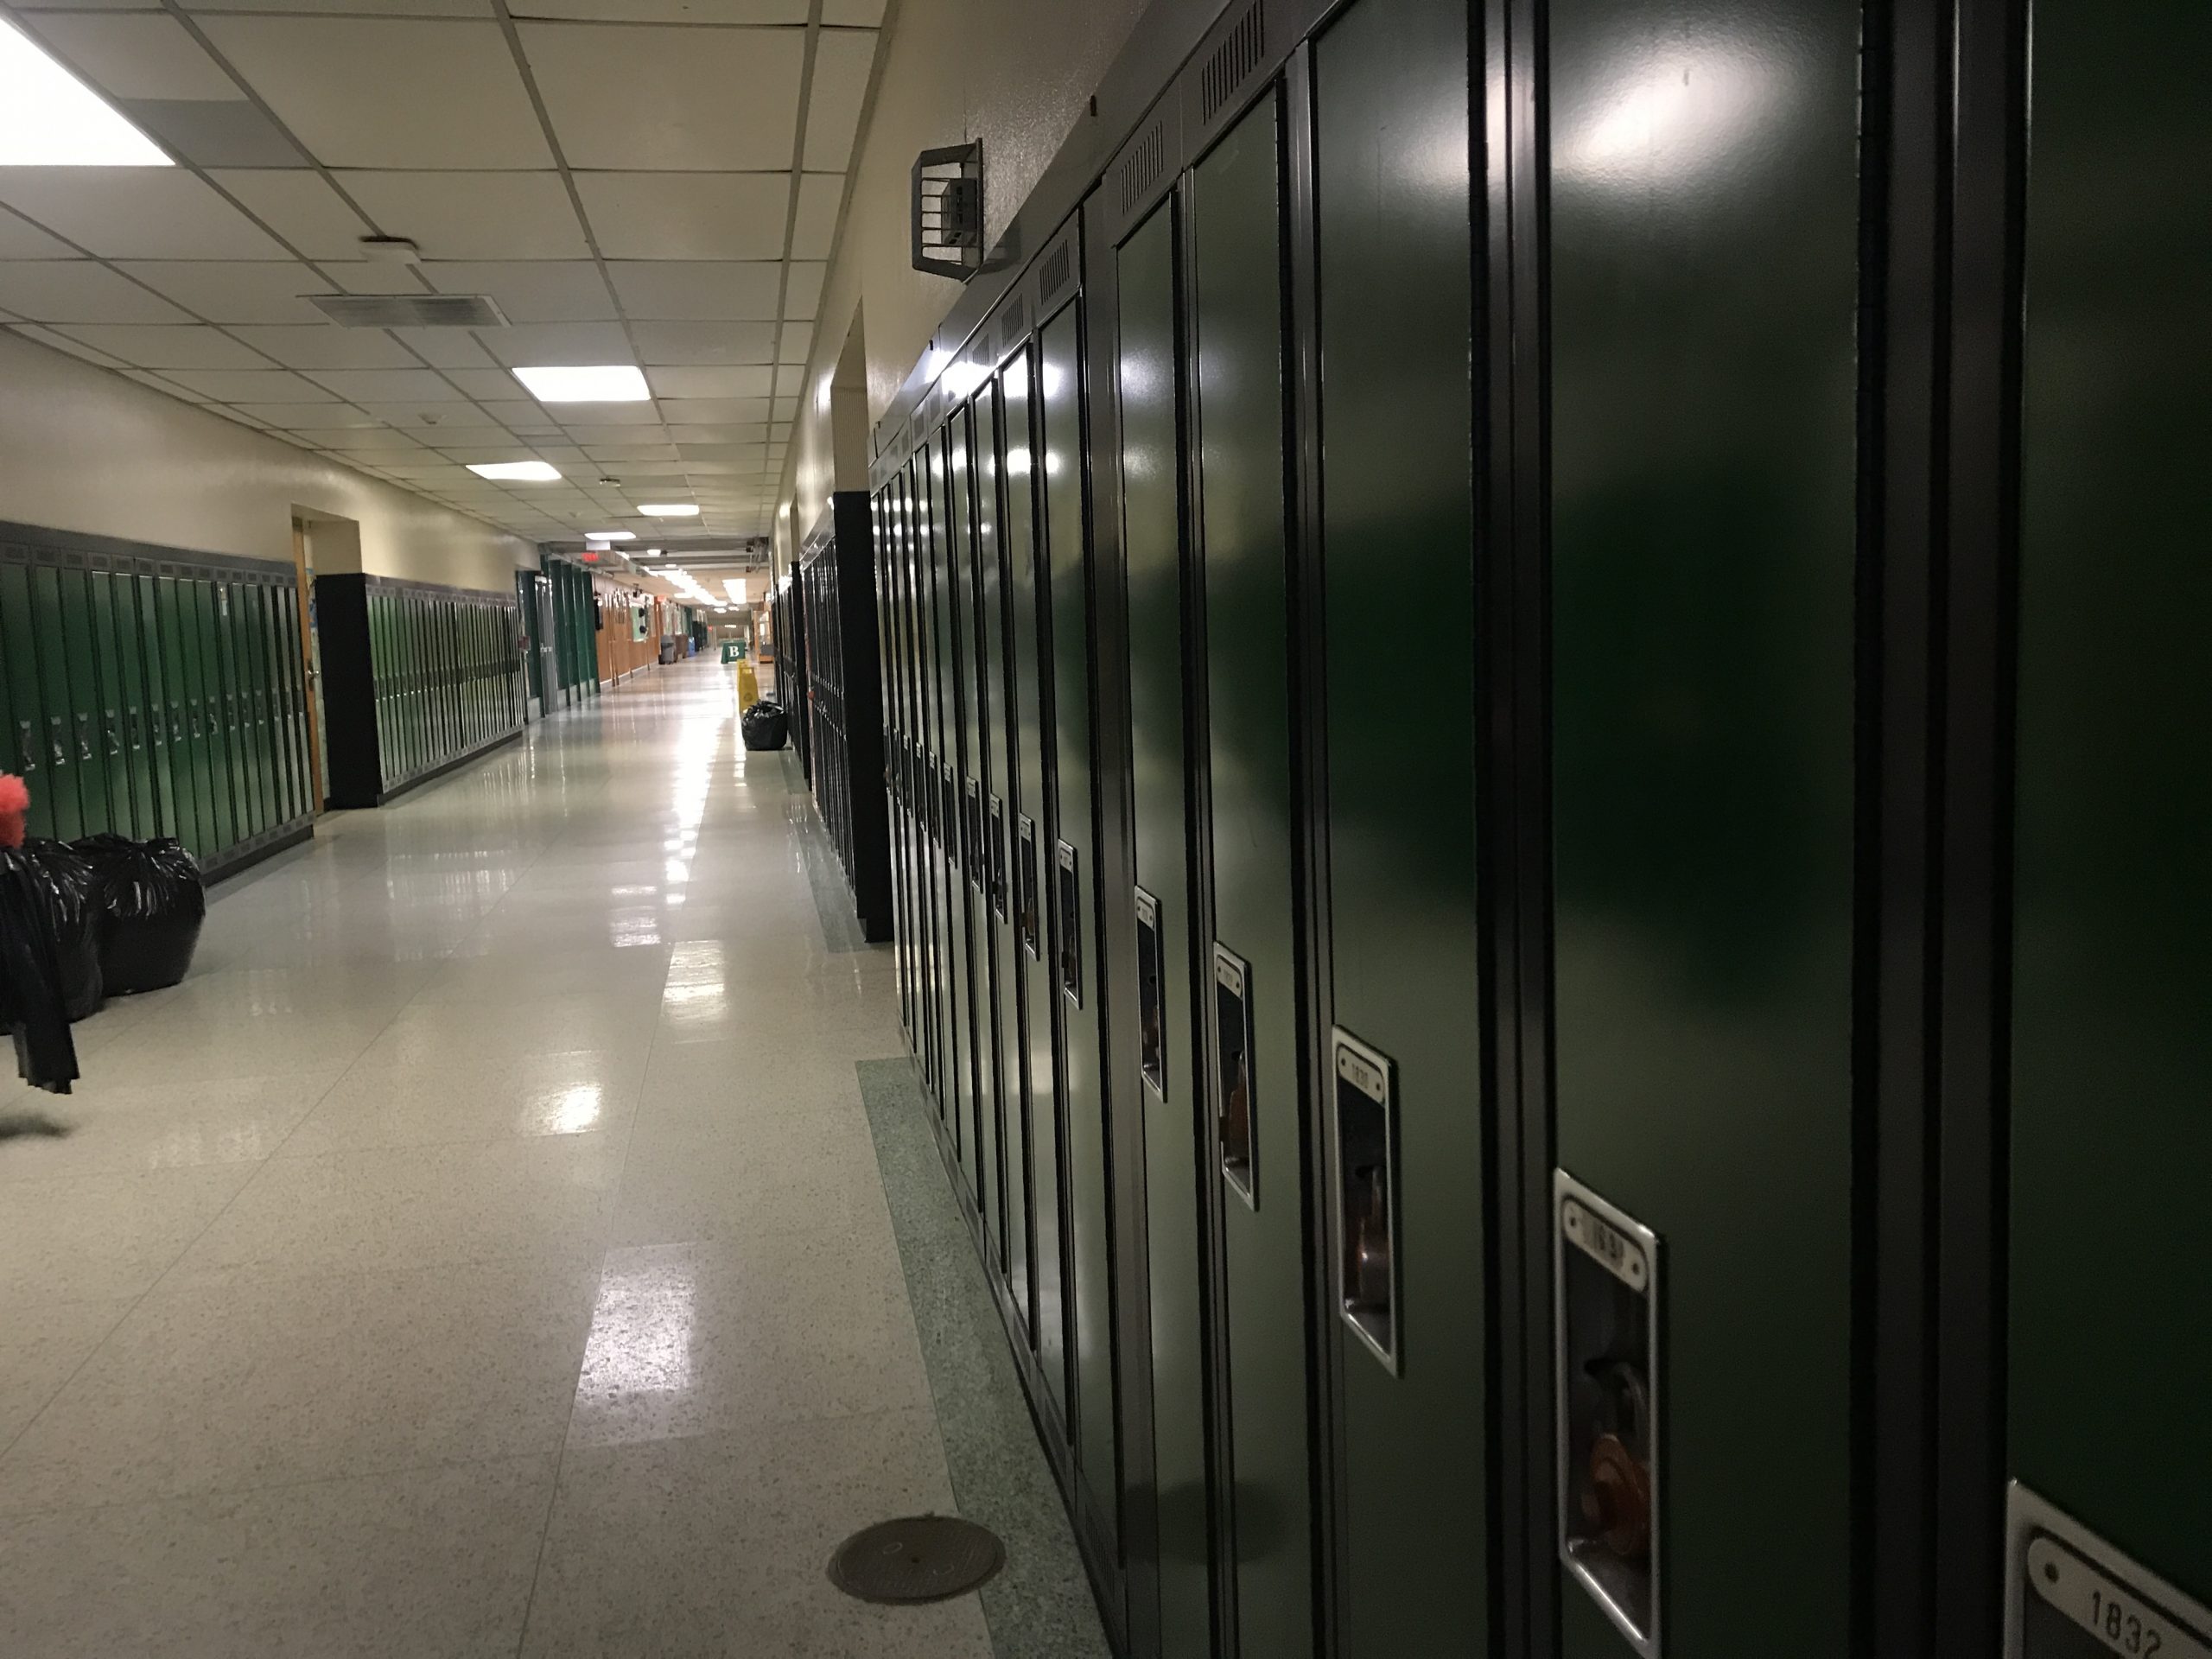 School lockers. (Photo: Daniel Nee)